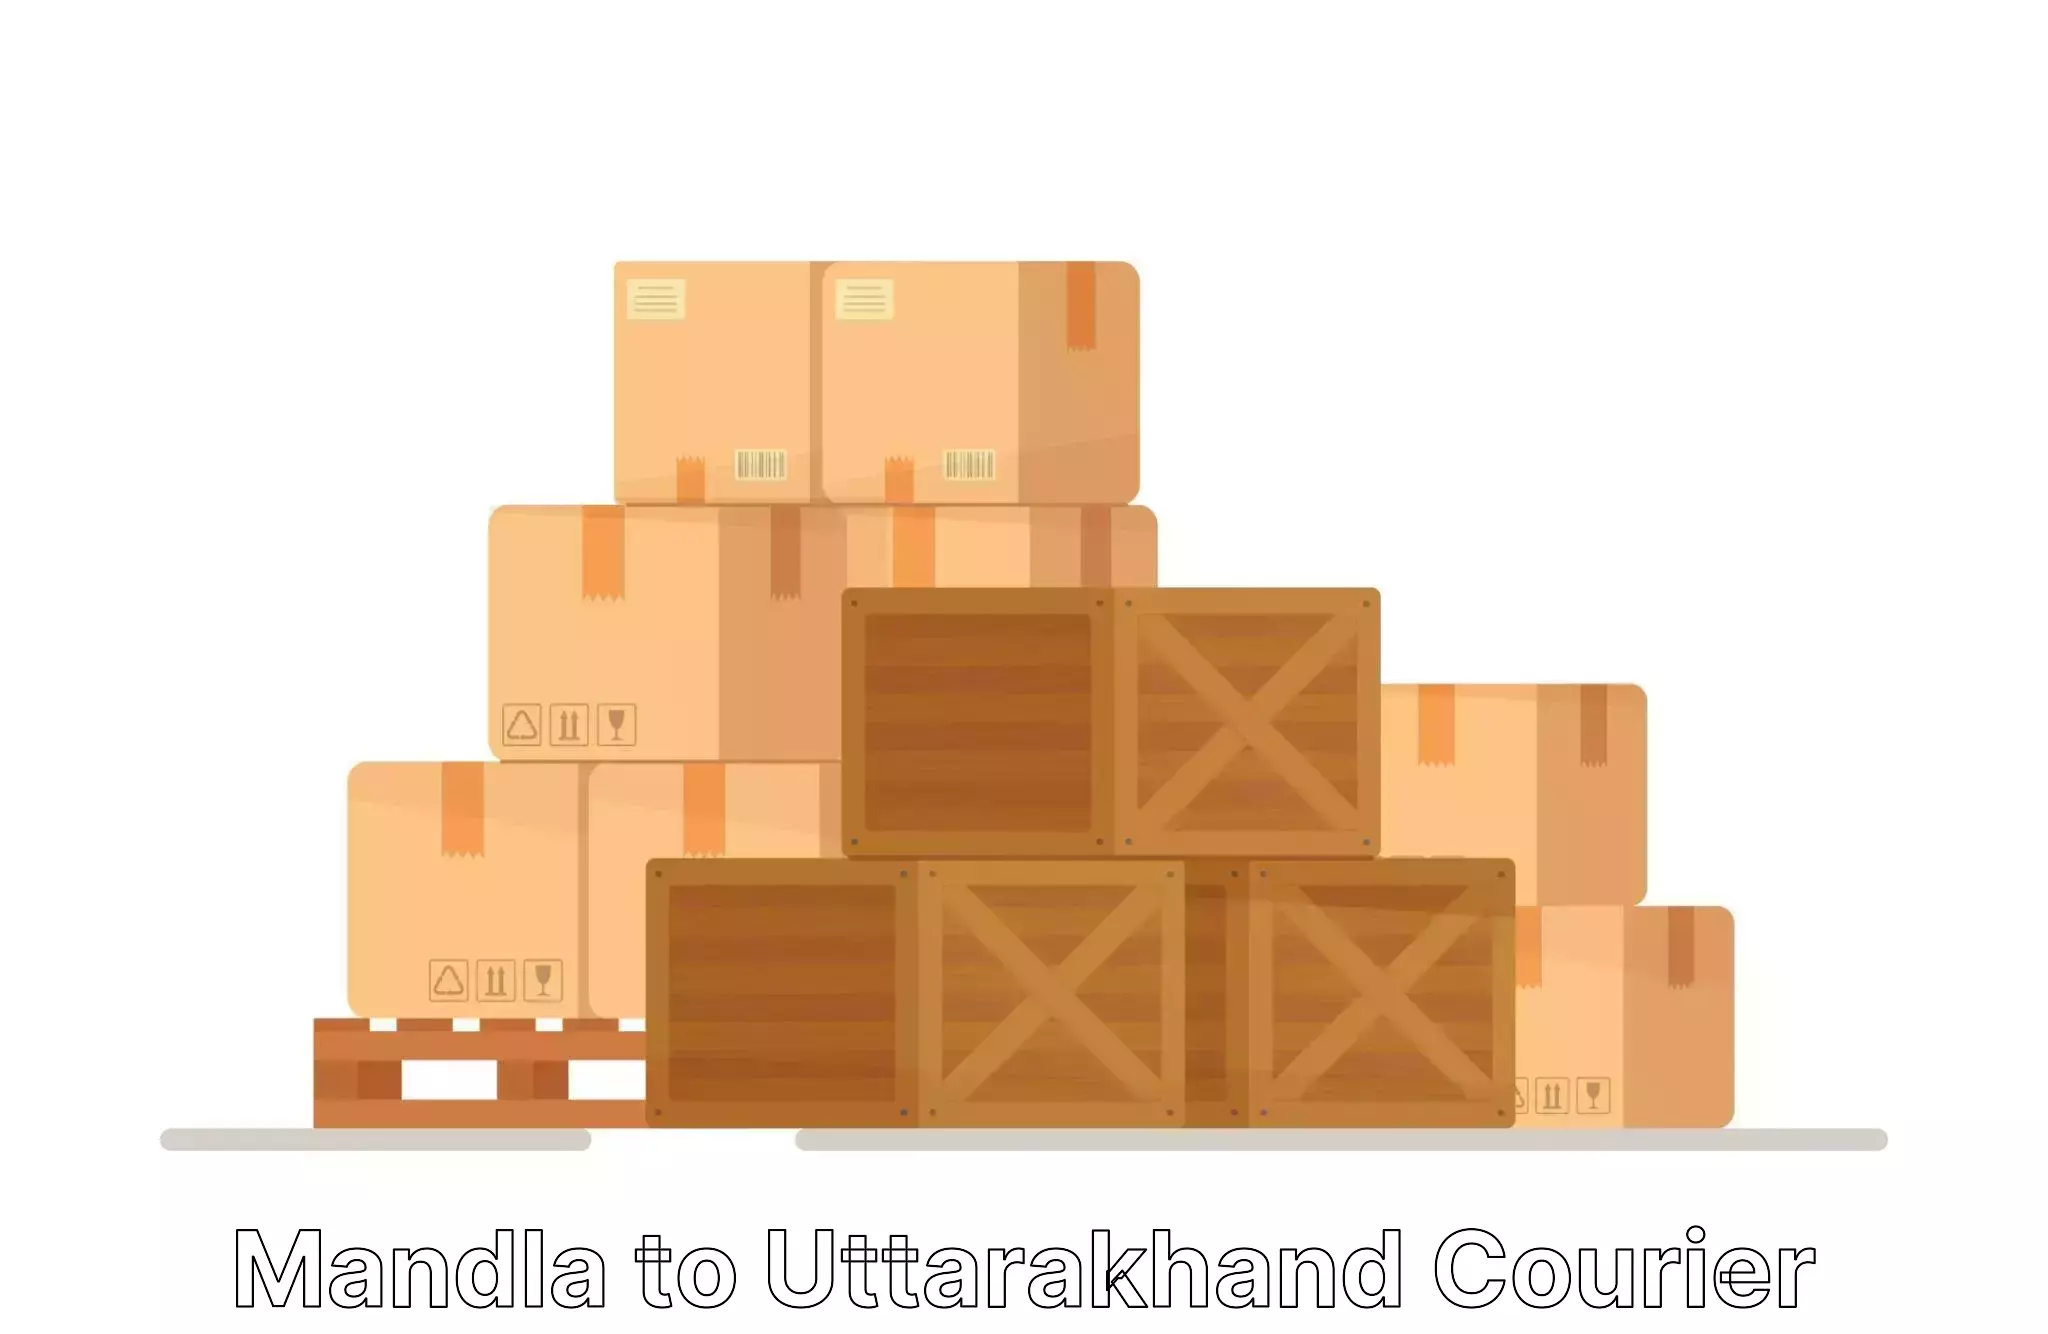 Customized moving experience in Mandla to Uttarakhand